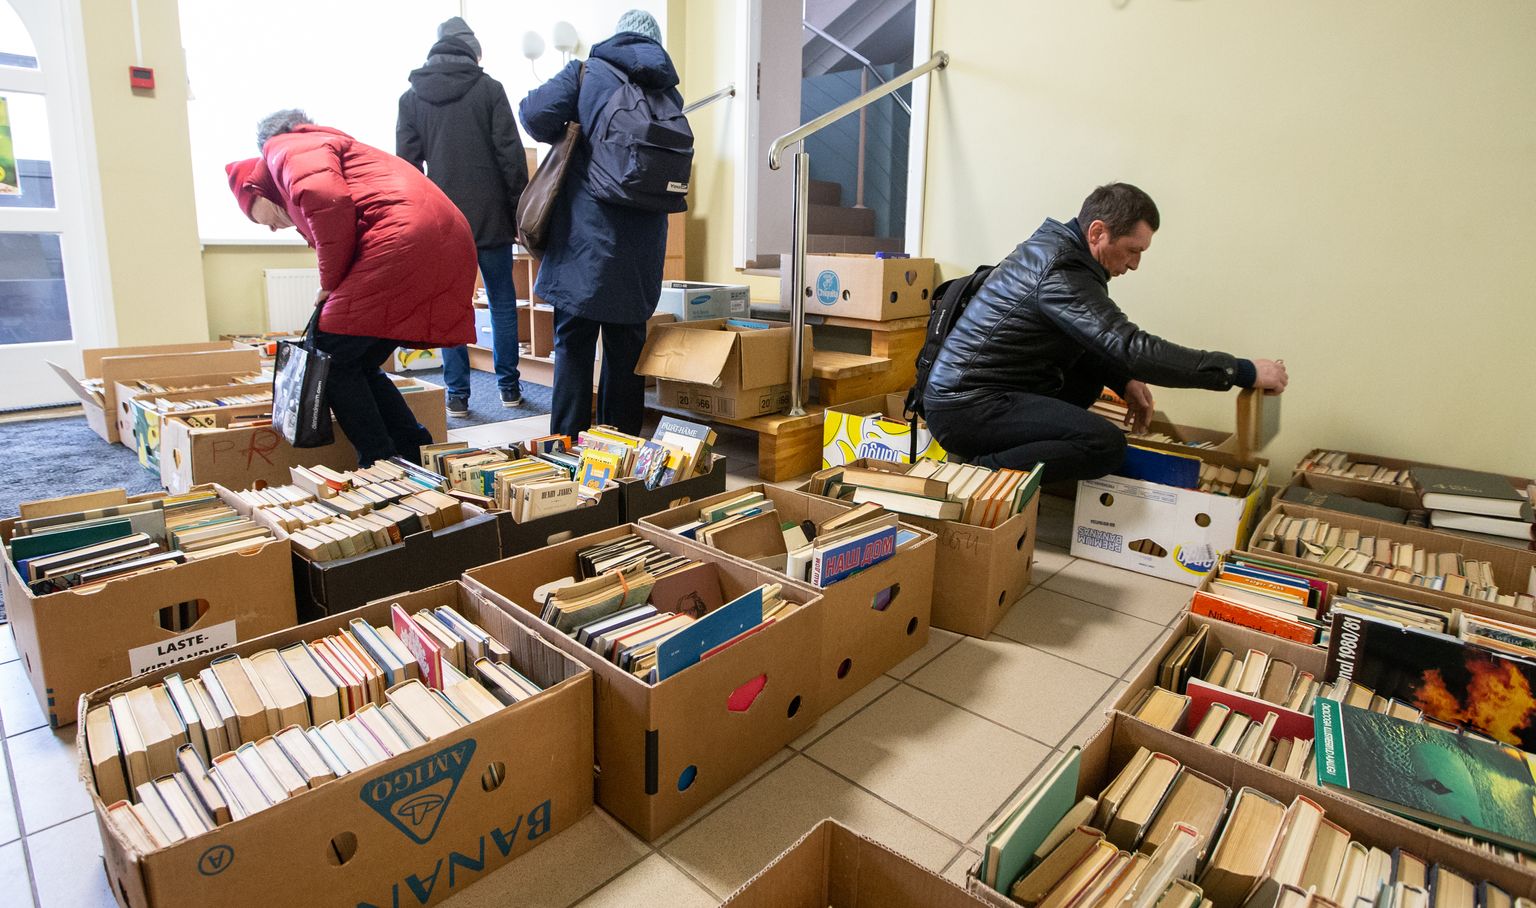 Библиотека-депозитарий находилась в Ида-Вирумаа также в марте, когда в Йыхвиской центральной библиотеке было собрано более 6000 изданий.